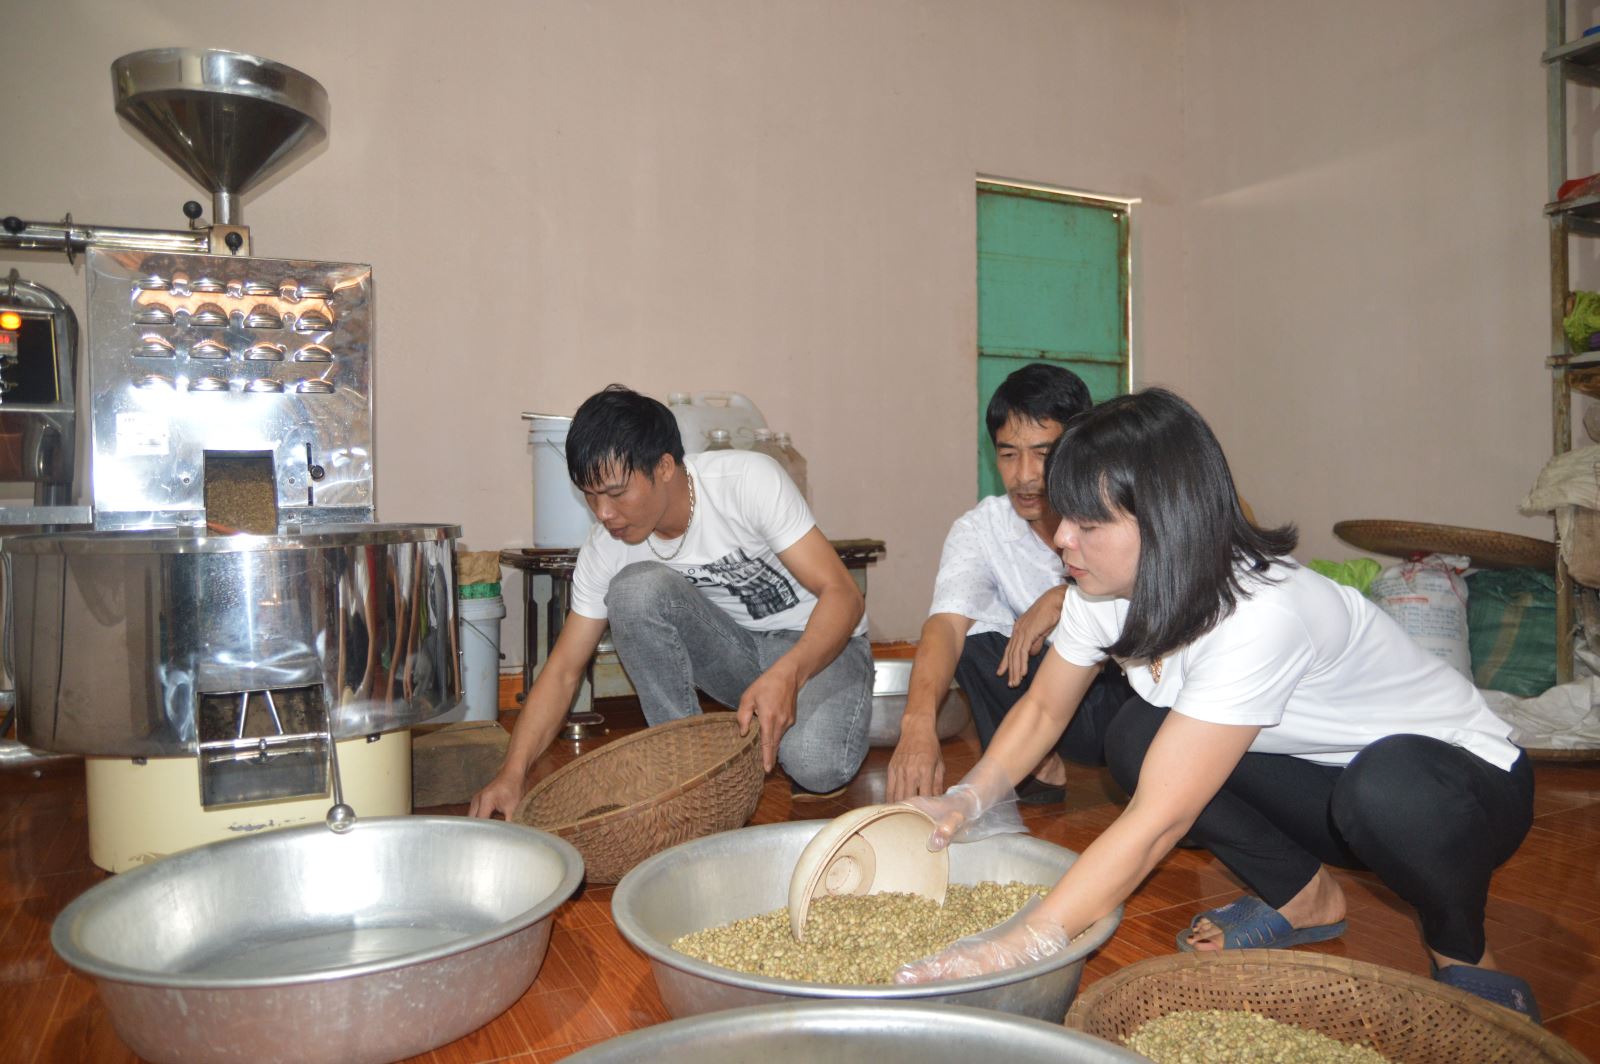 Article Nông dân mạnh dạn sản xuất cà phê bột mang lại hiệu quả cao